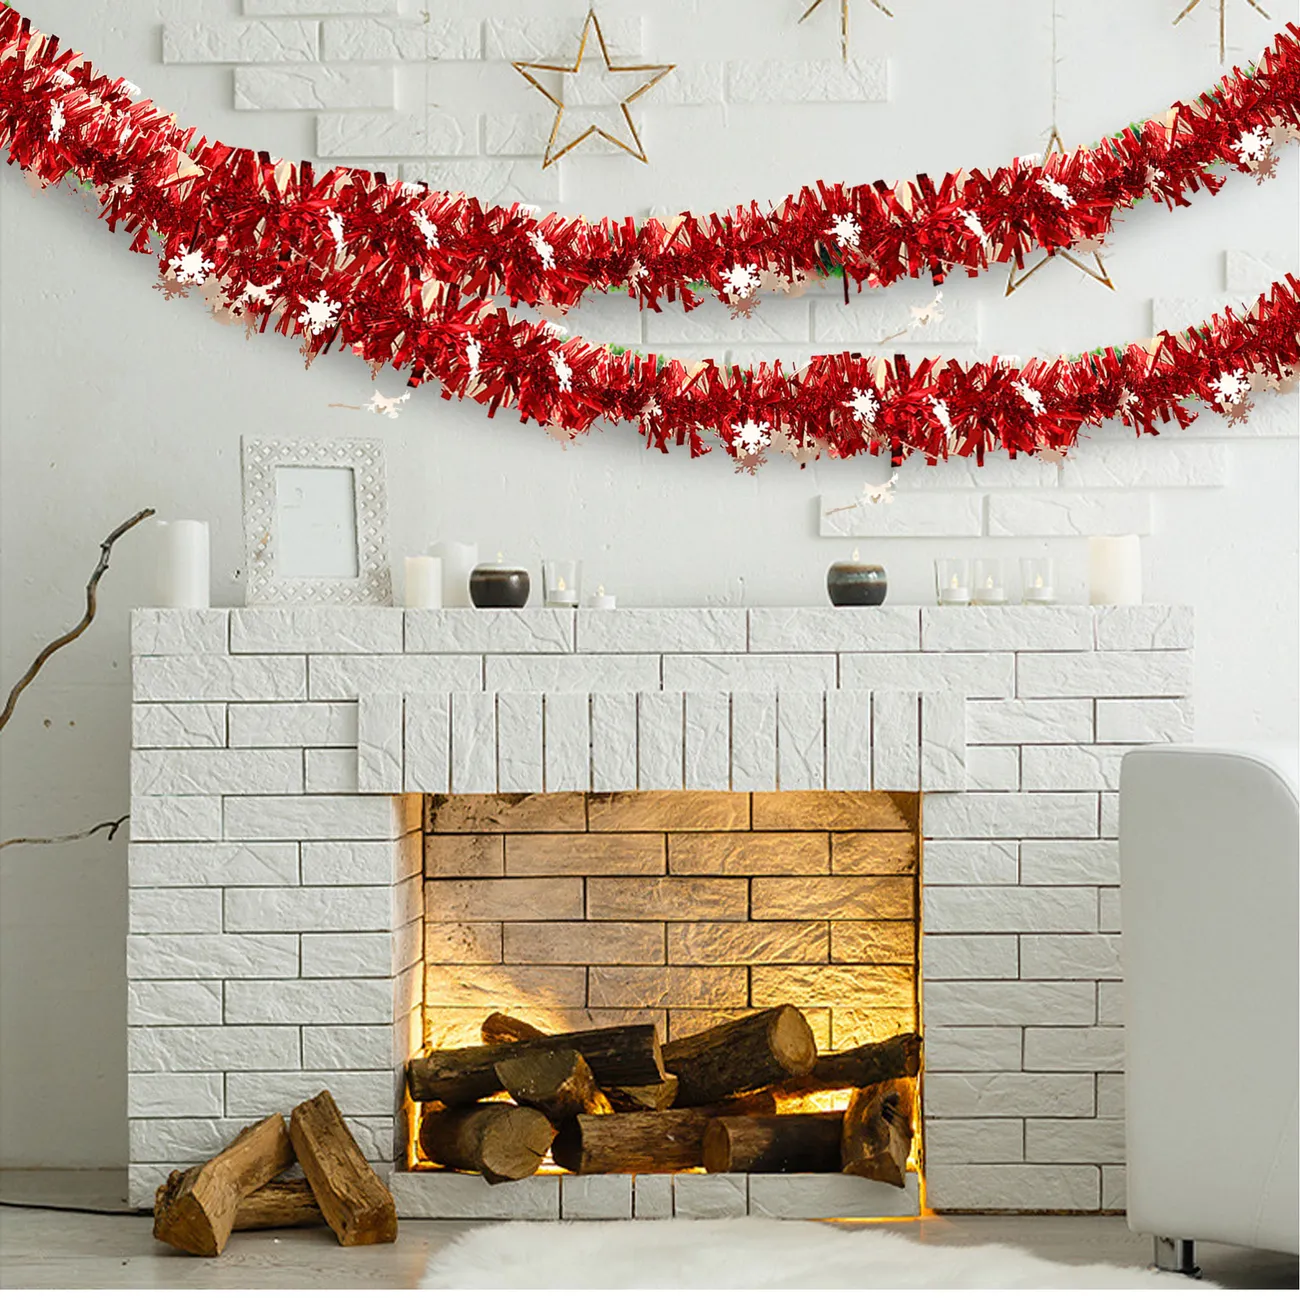 Nastro decorativo natalizio da 5 pezzi con fiocchi di neve - Decorazioni per feste natalizie in colori casuali colorato big image 1